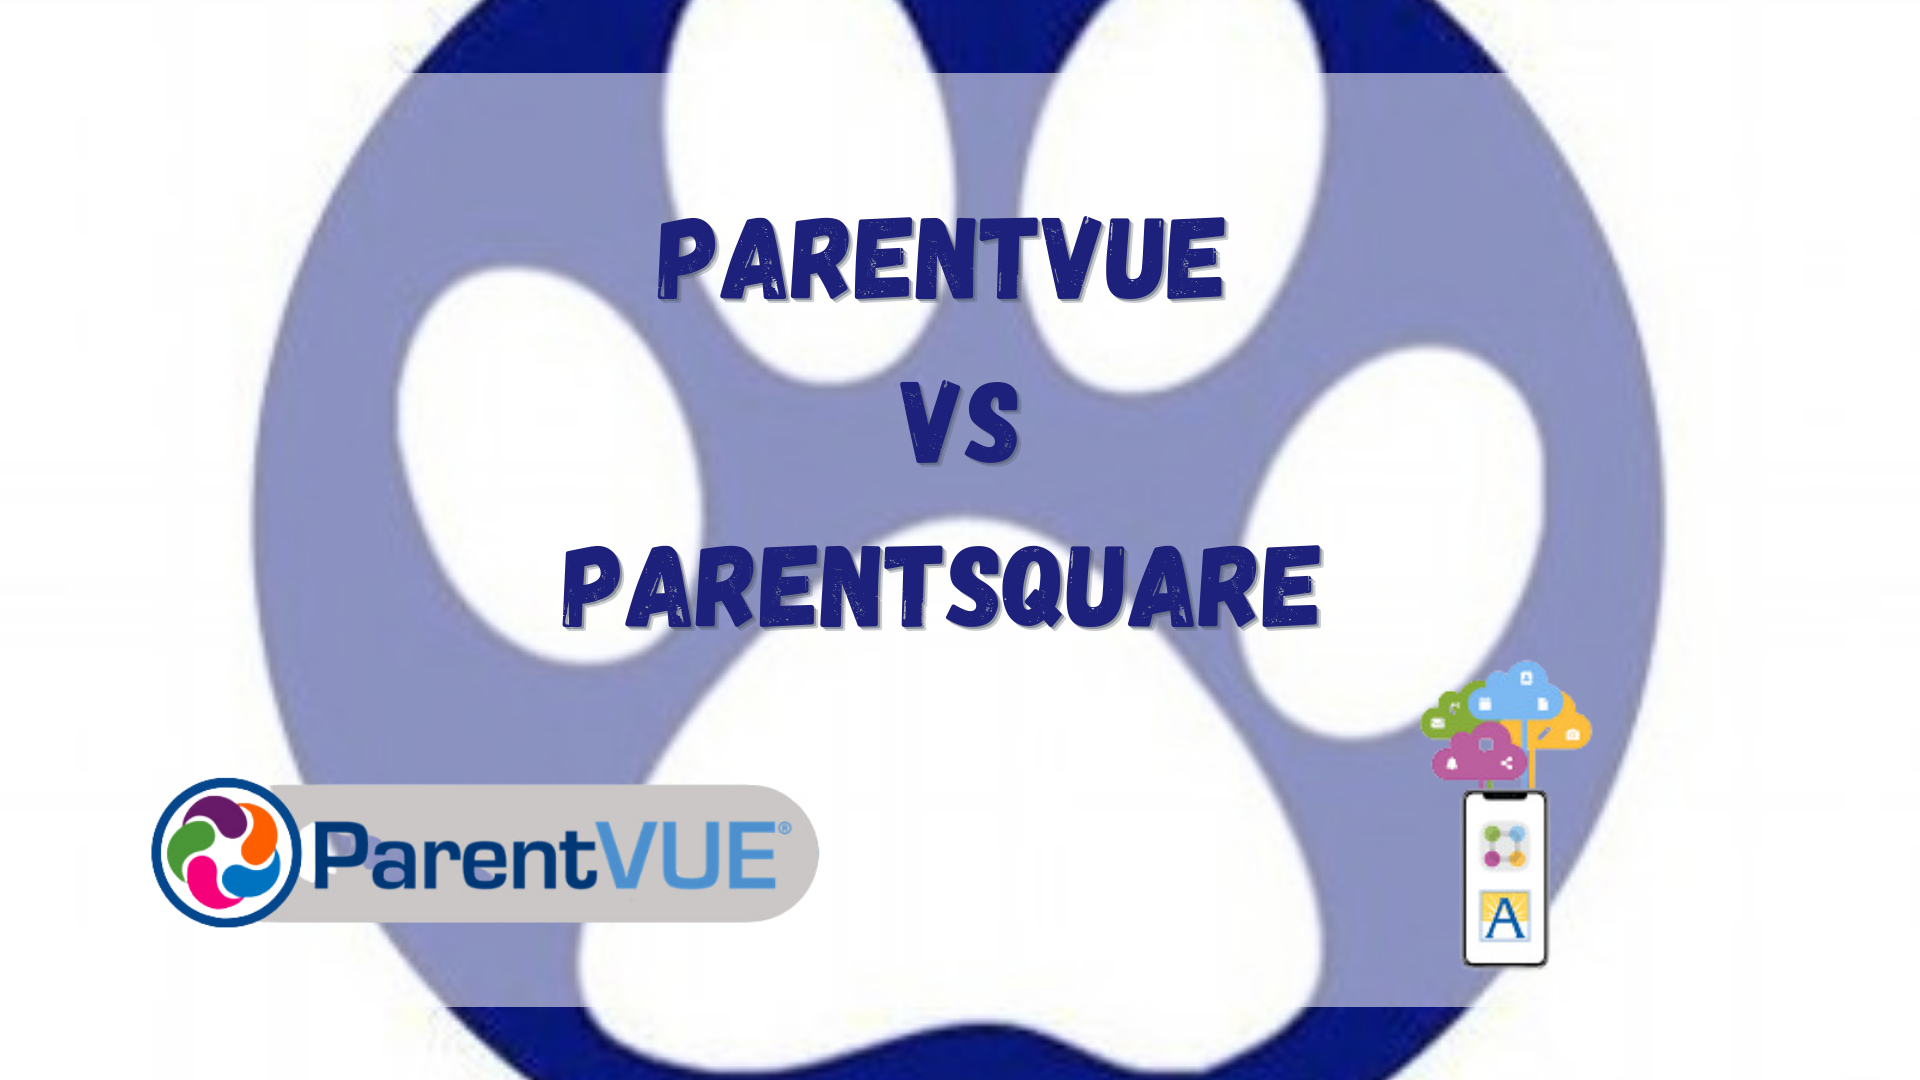 parent Vue vs parent square